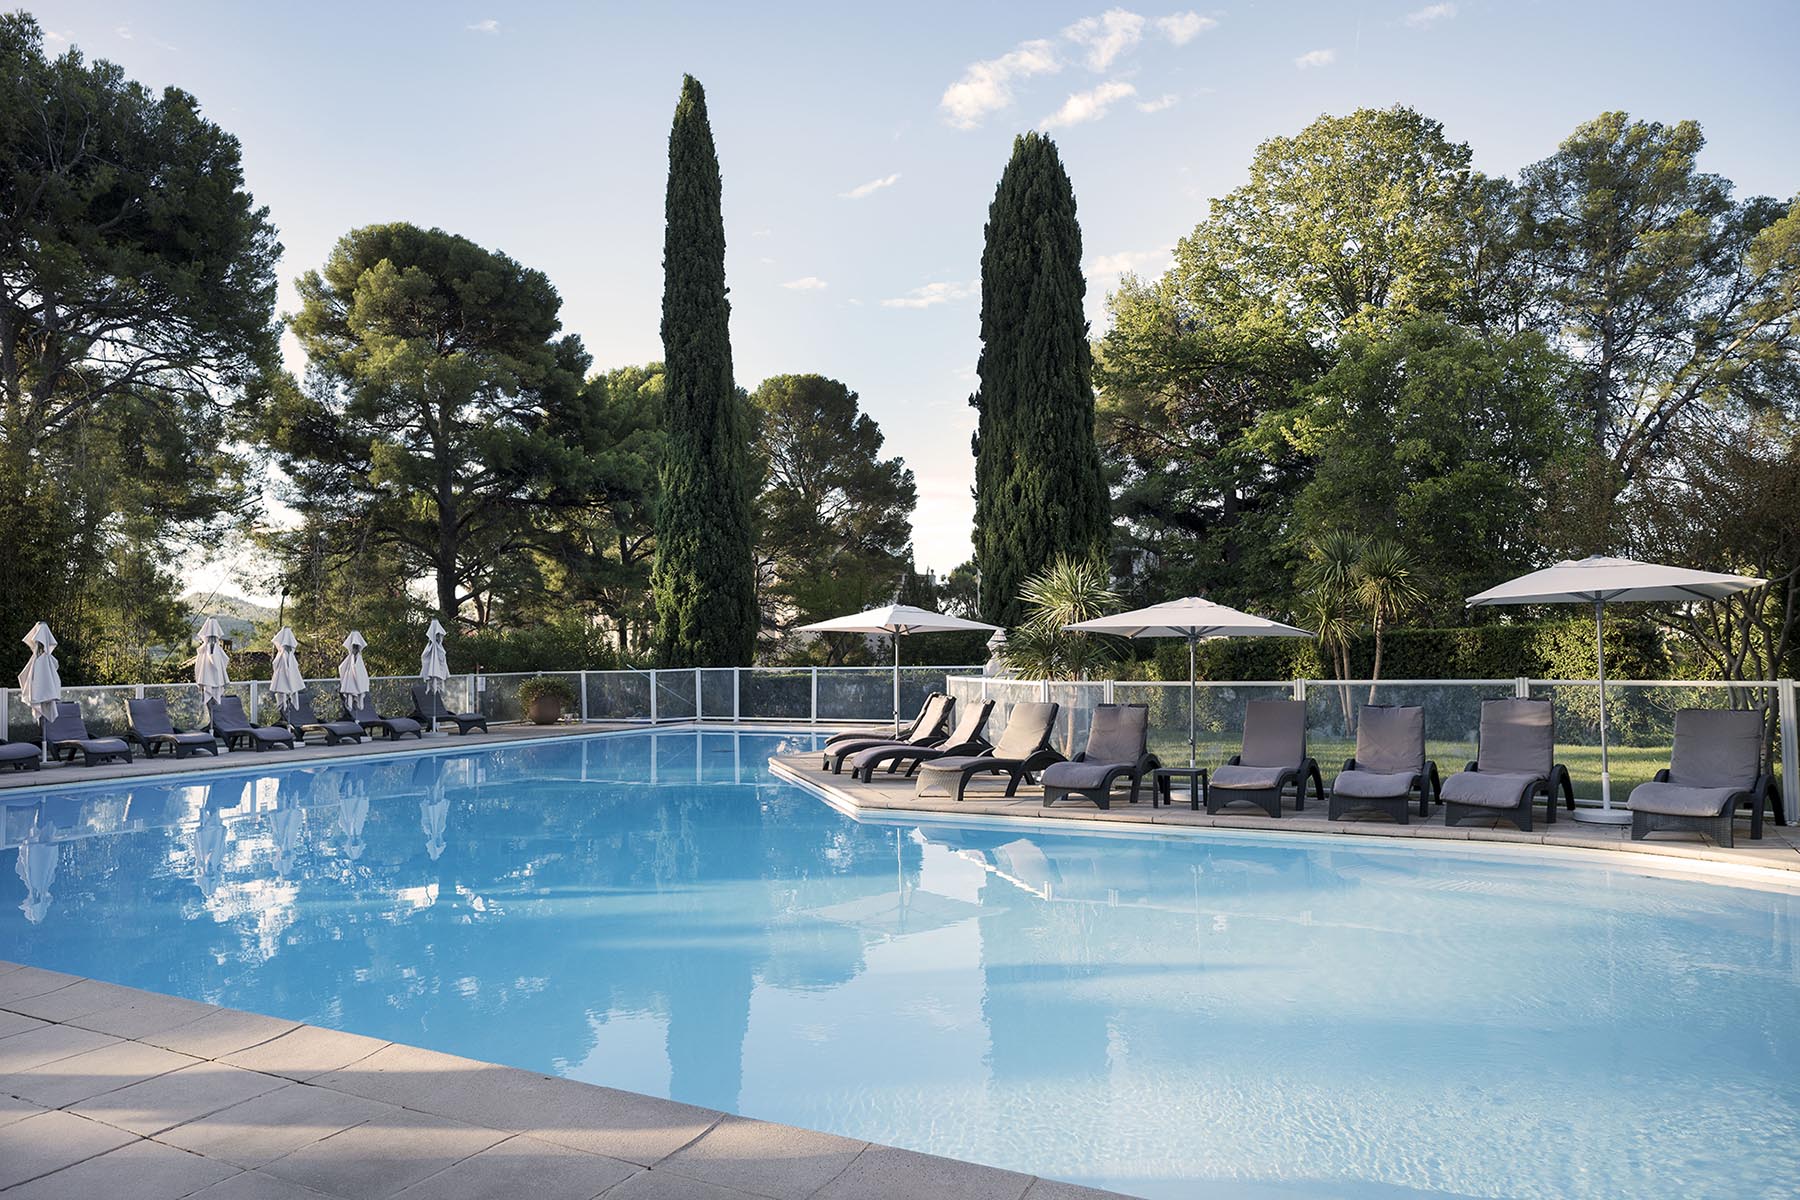 Découvrez pour vos évènements professionnels dans le Var, Grand Hôtel Les Lecques au cœur d'un parc de 3 hectares avec une vue imprenable sur la baie des Lecques.